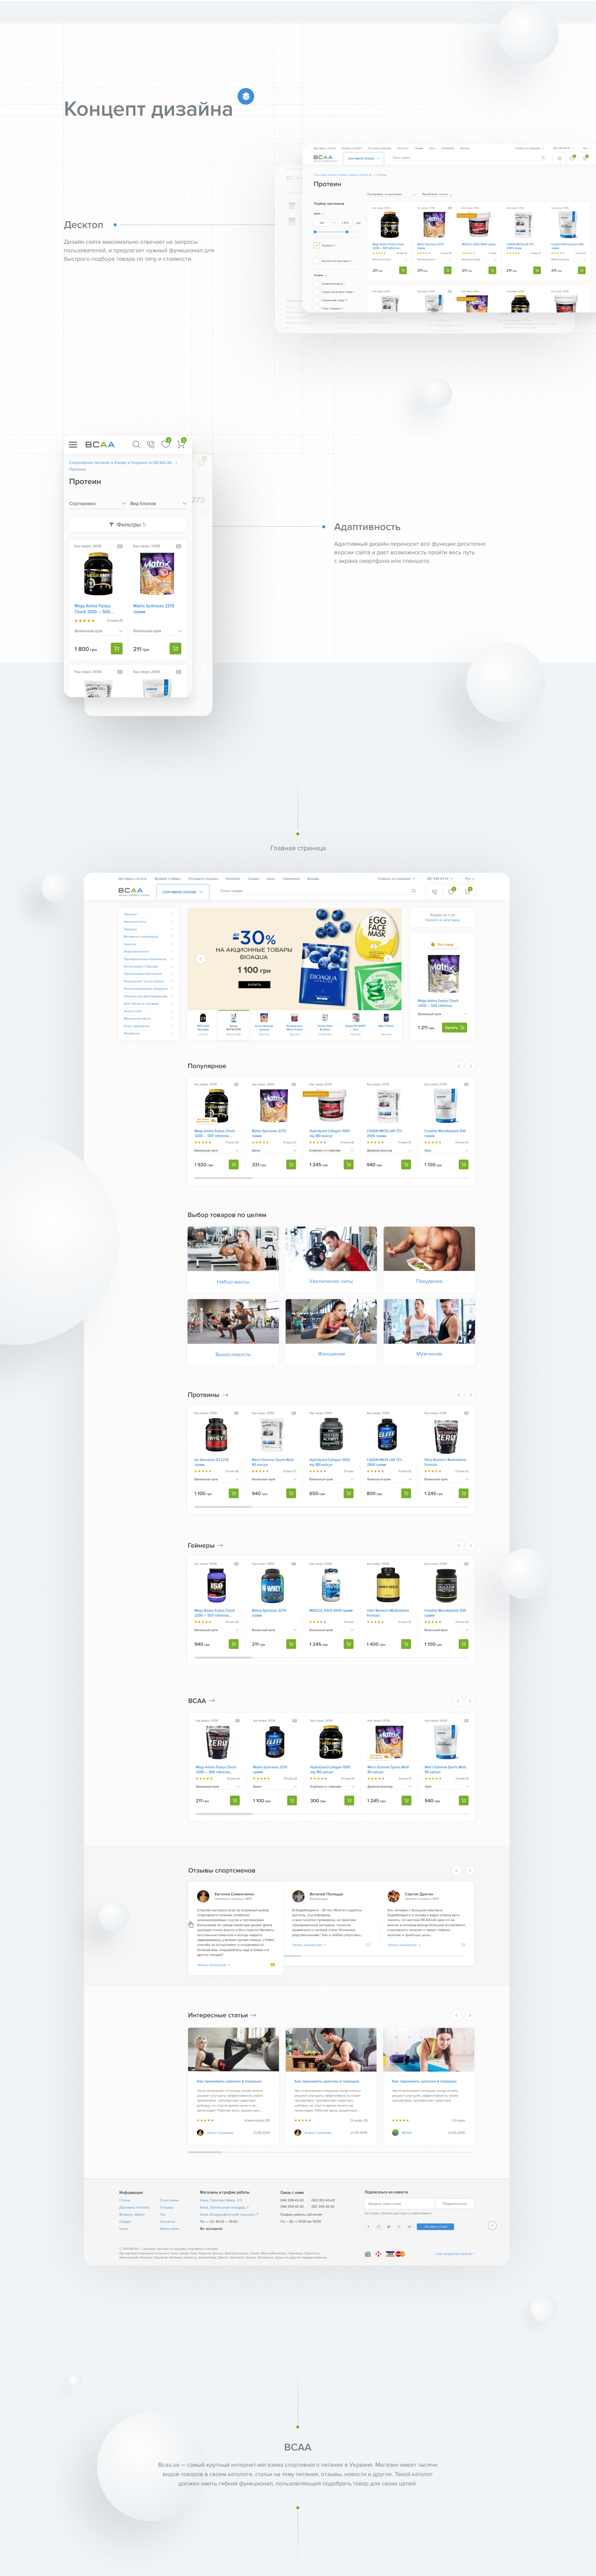 дизайн Web Webdesign Ecommerce Onlineshop онлайн магазин фигма Figma магазин Екомерс